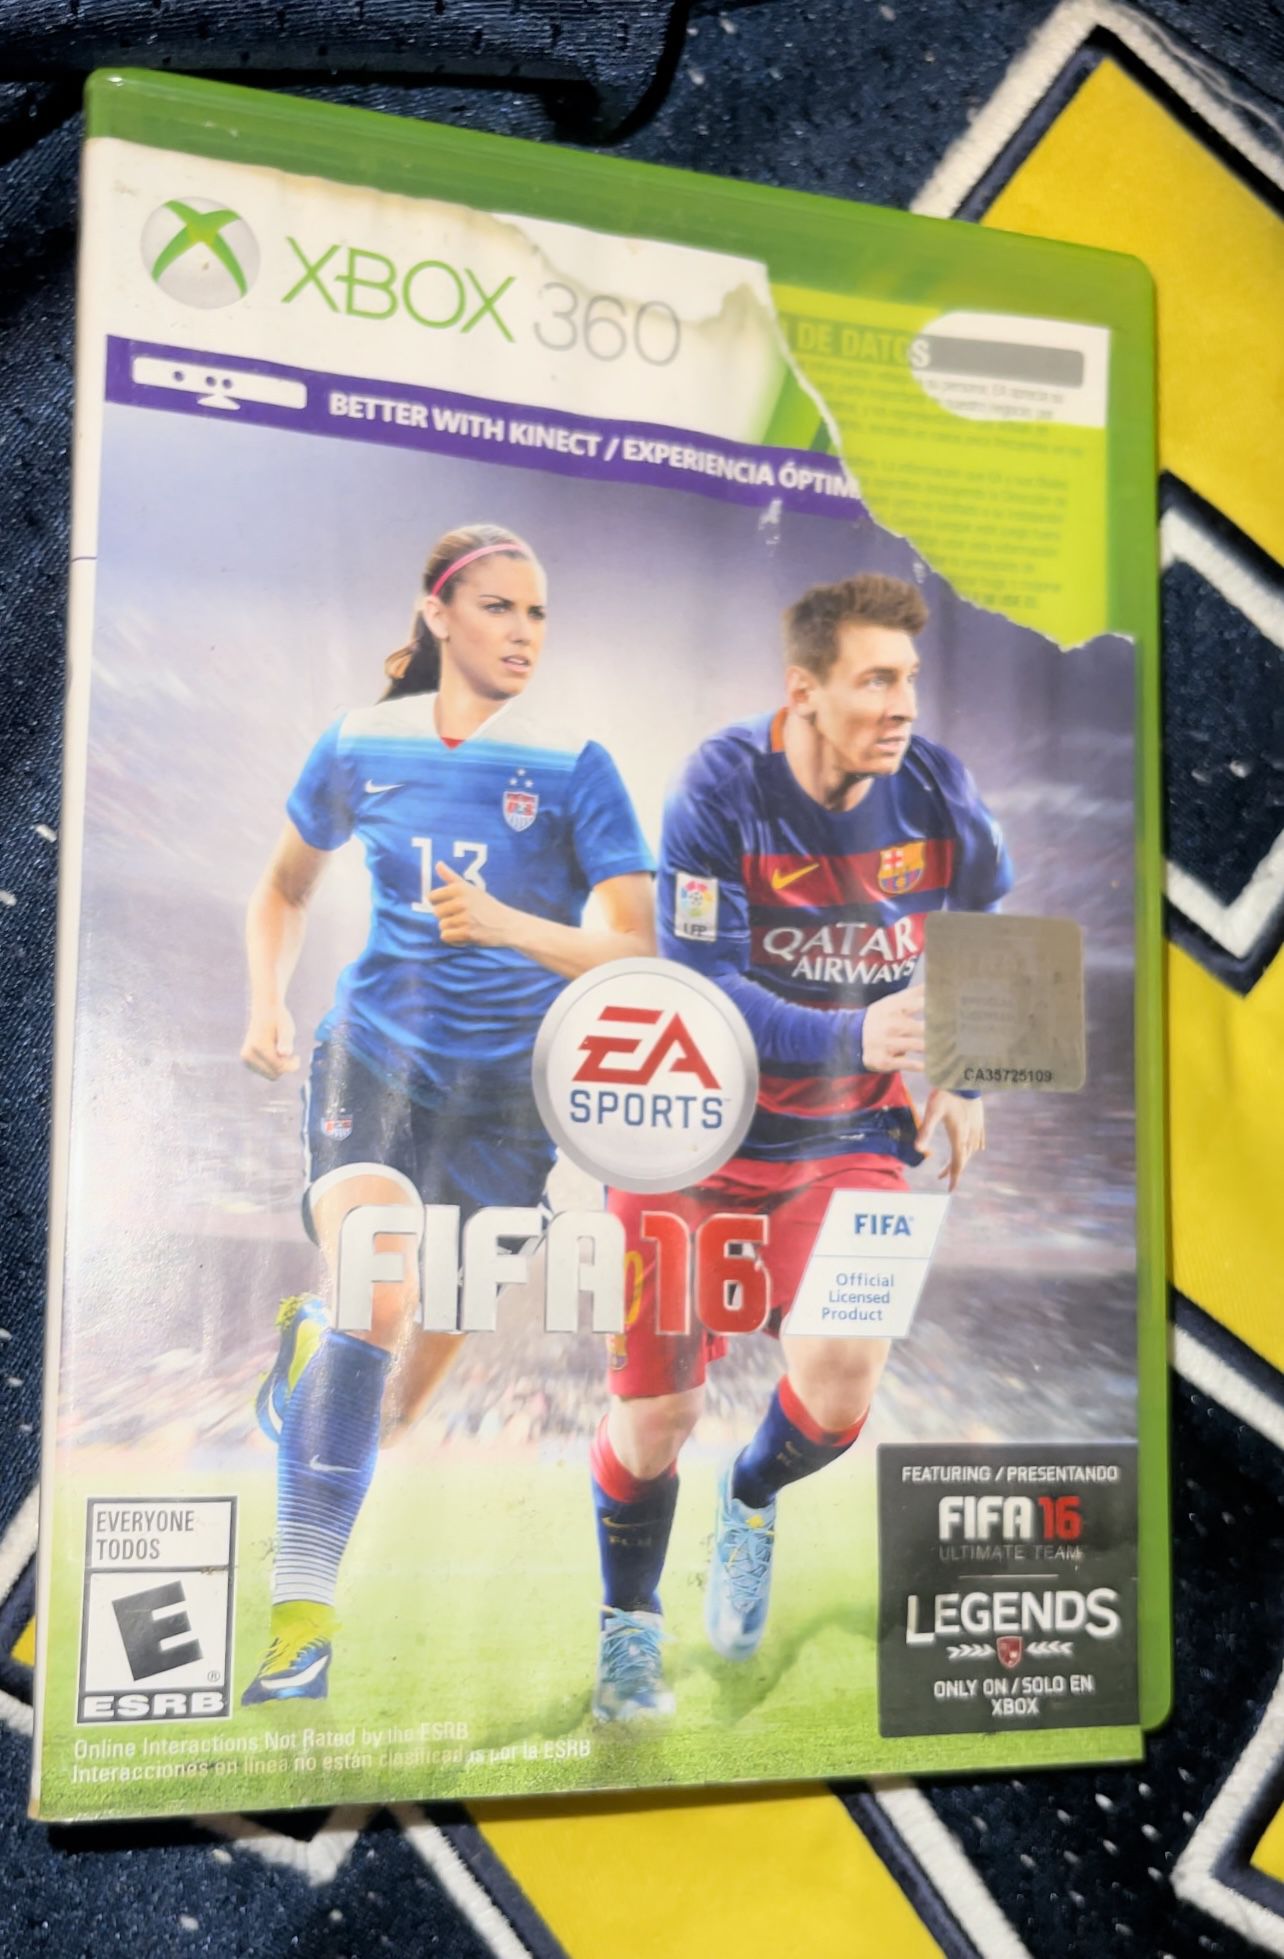 Xbox 360: EA Sports FIFA 16